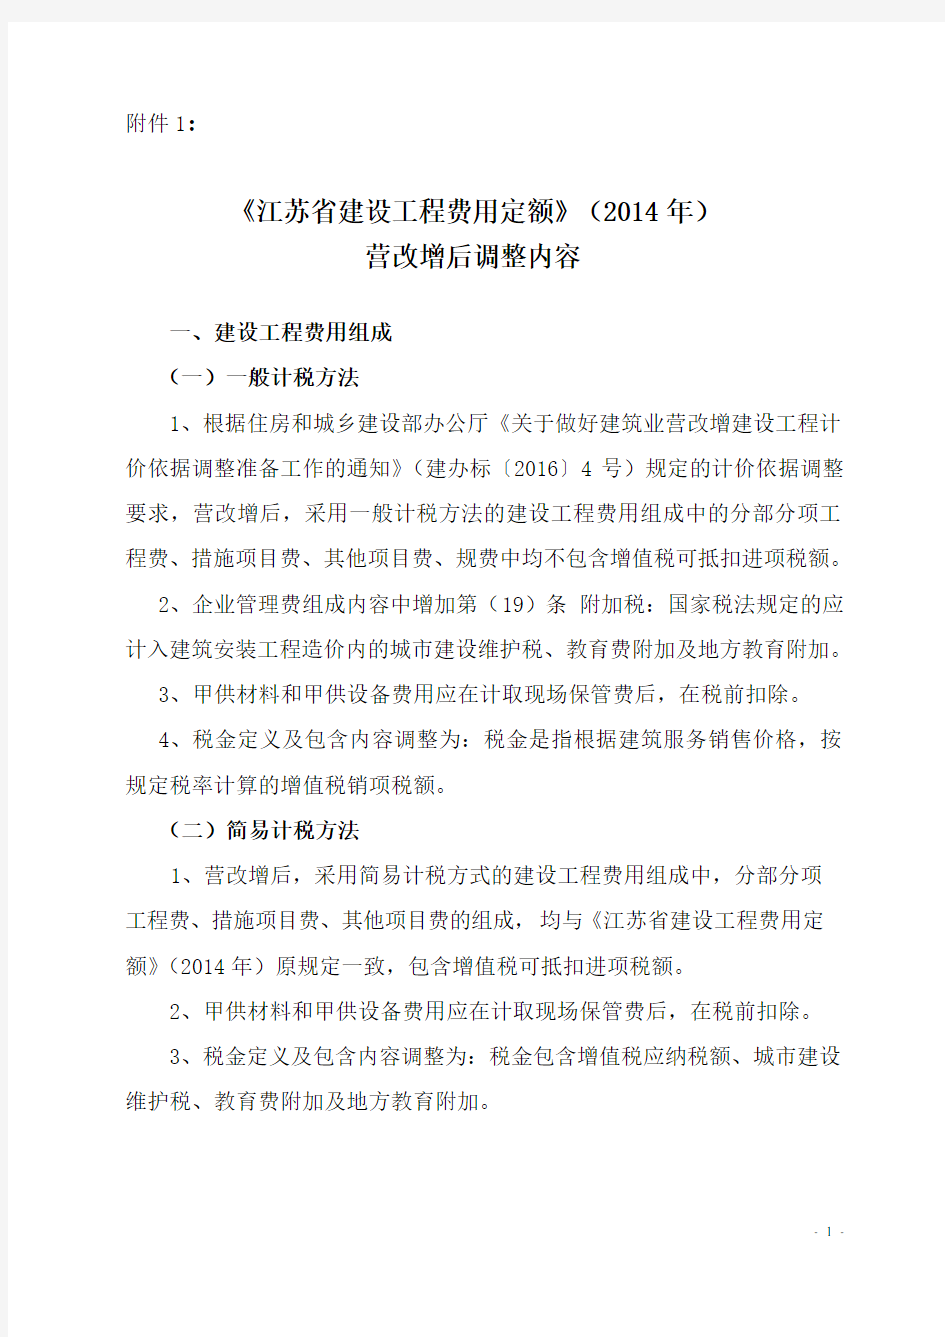 江苏省建设工程费用定额》(2014年)营改增后调整内容